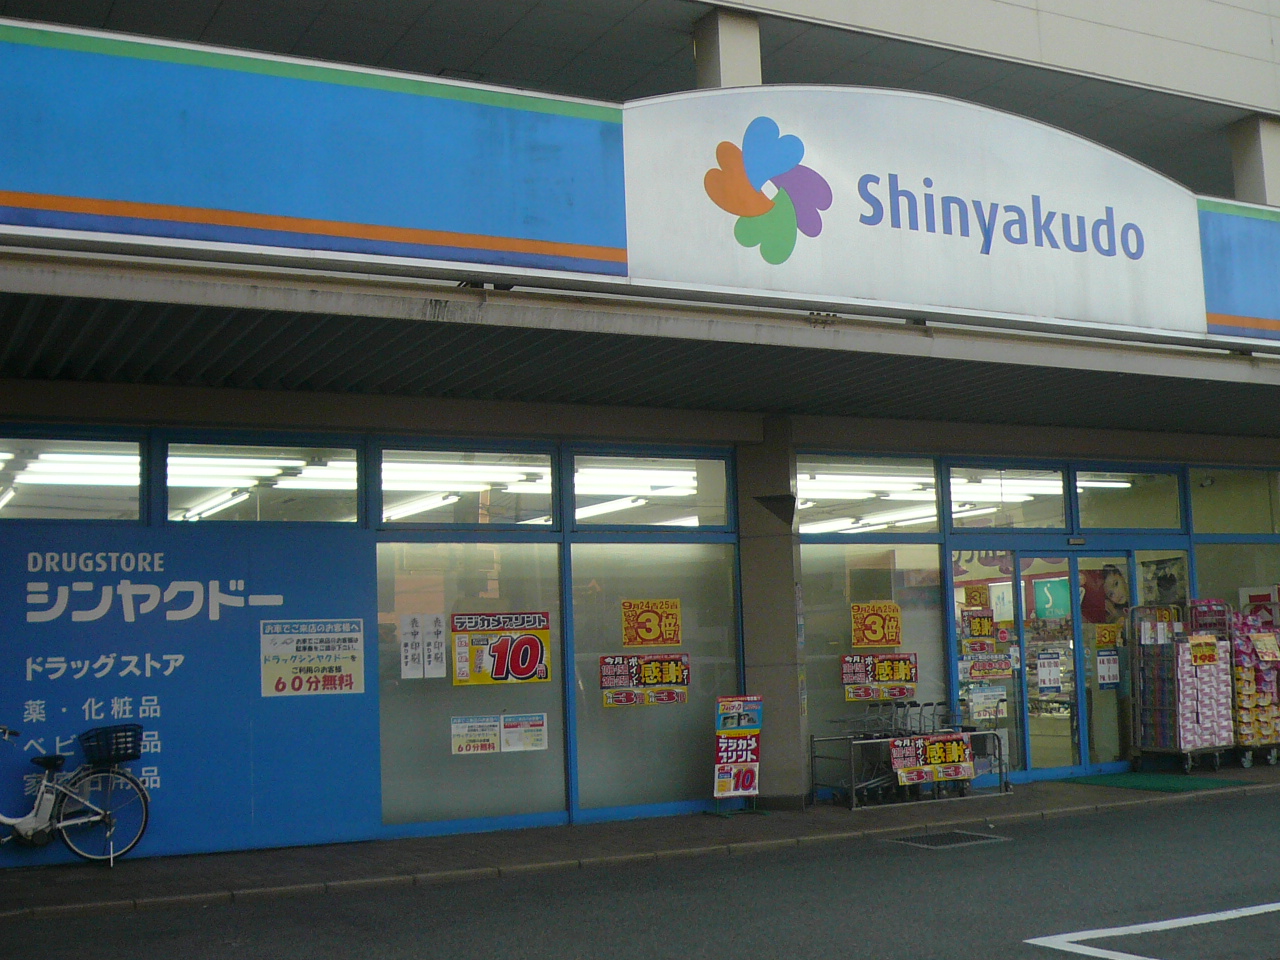 Dorakkusutoa. Shin'yakudo Ikegami shop 522m until (drugstore)